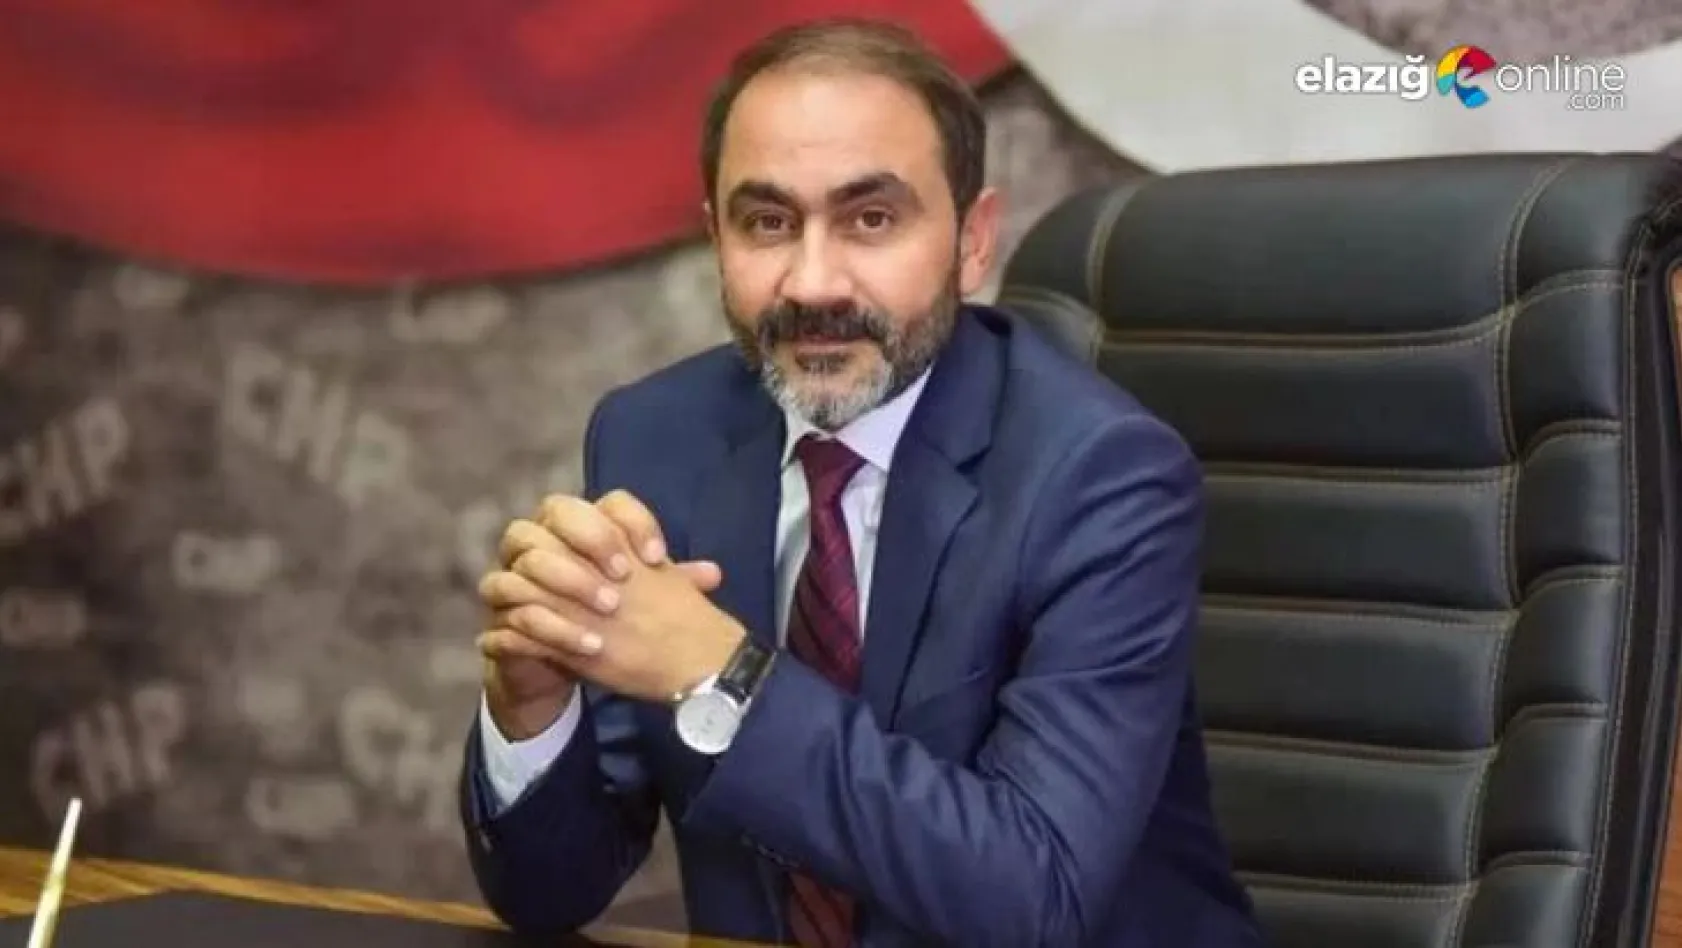 CHP, AKP'li vekillerin kurduğu vakfın peşini bırakmıyor